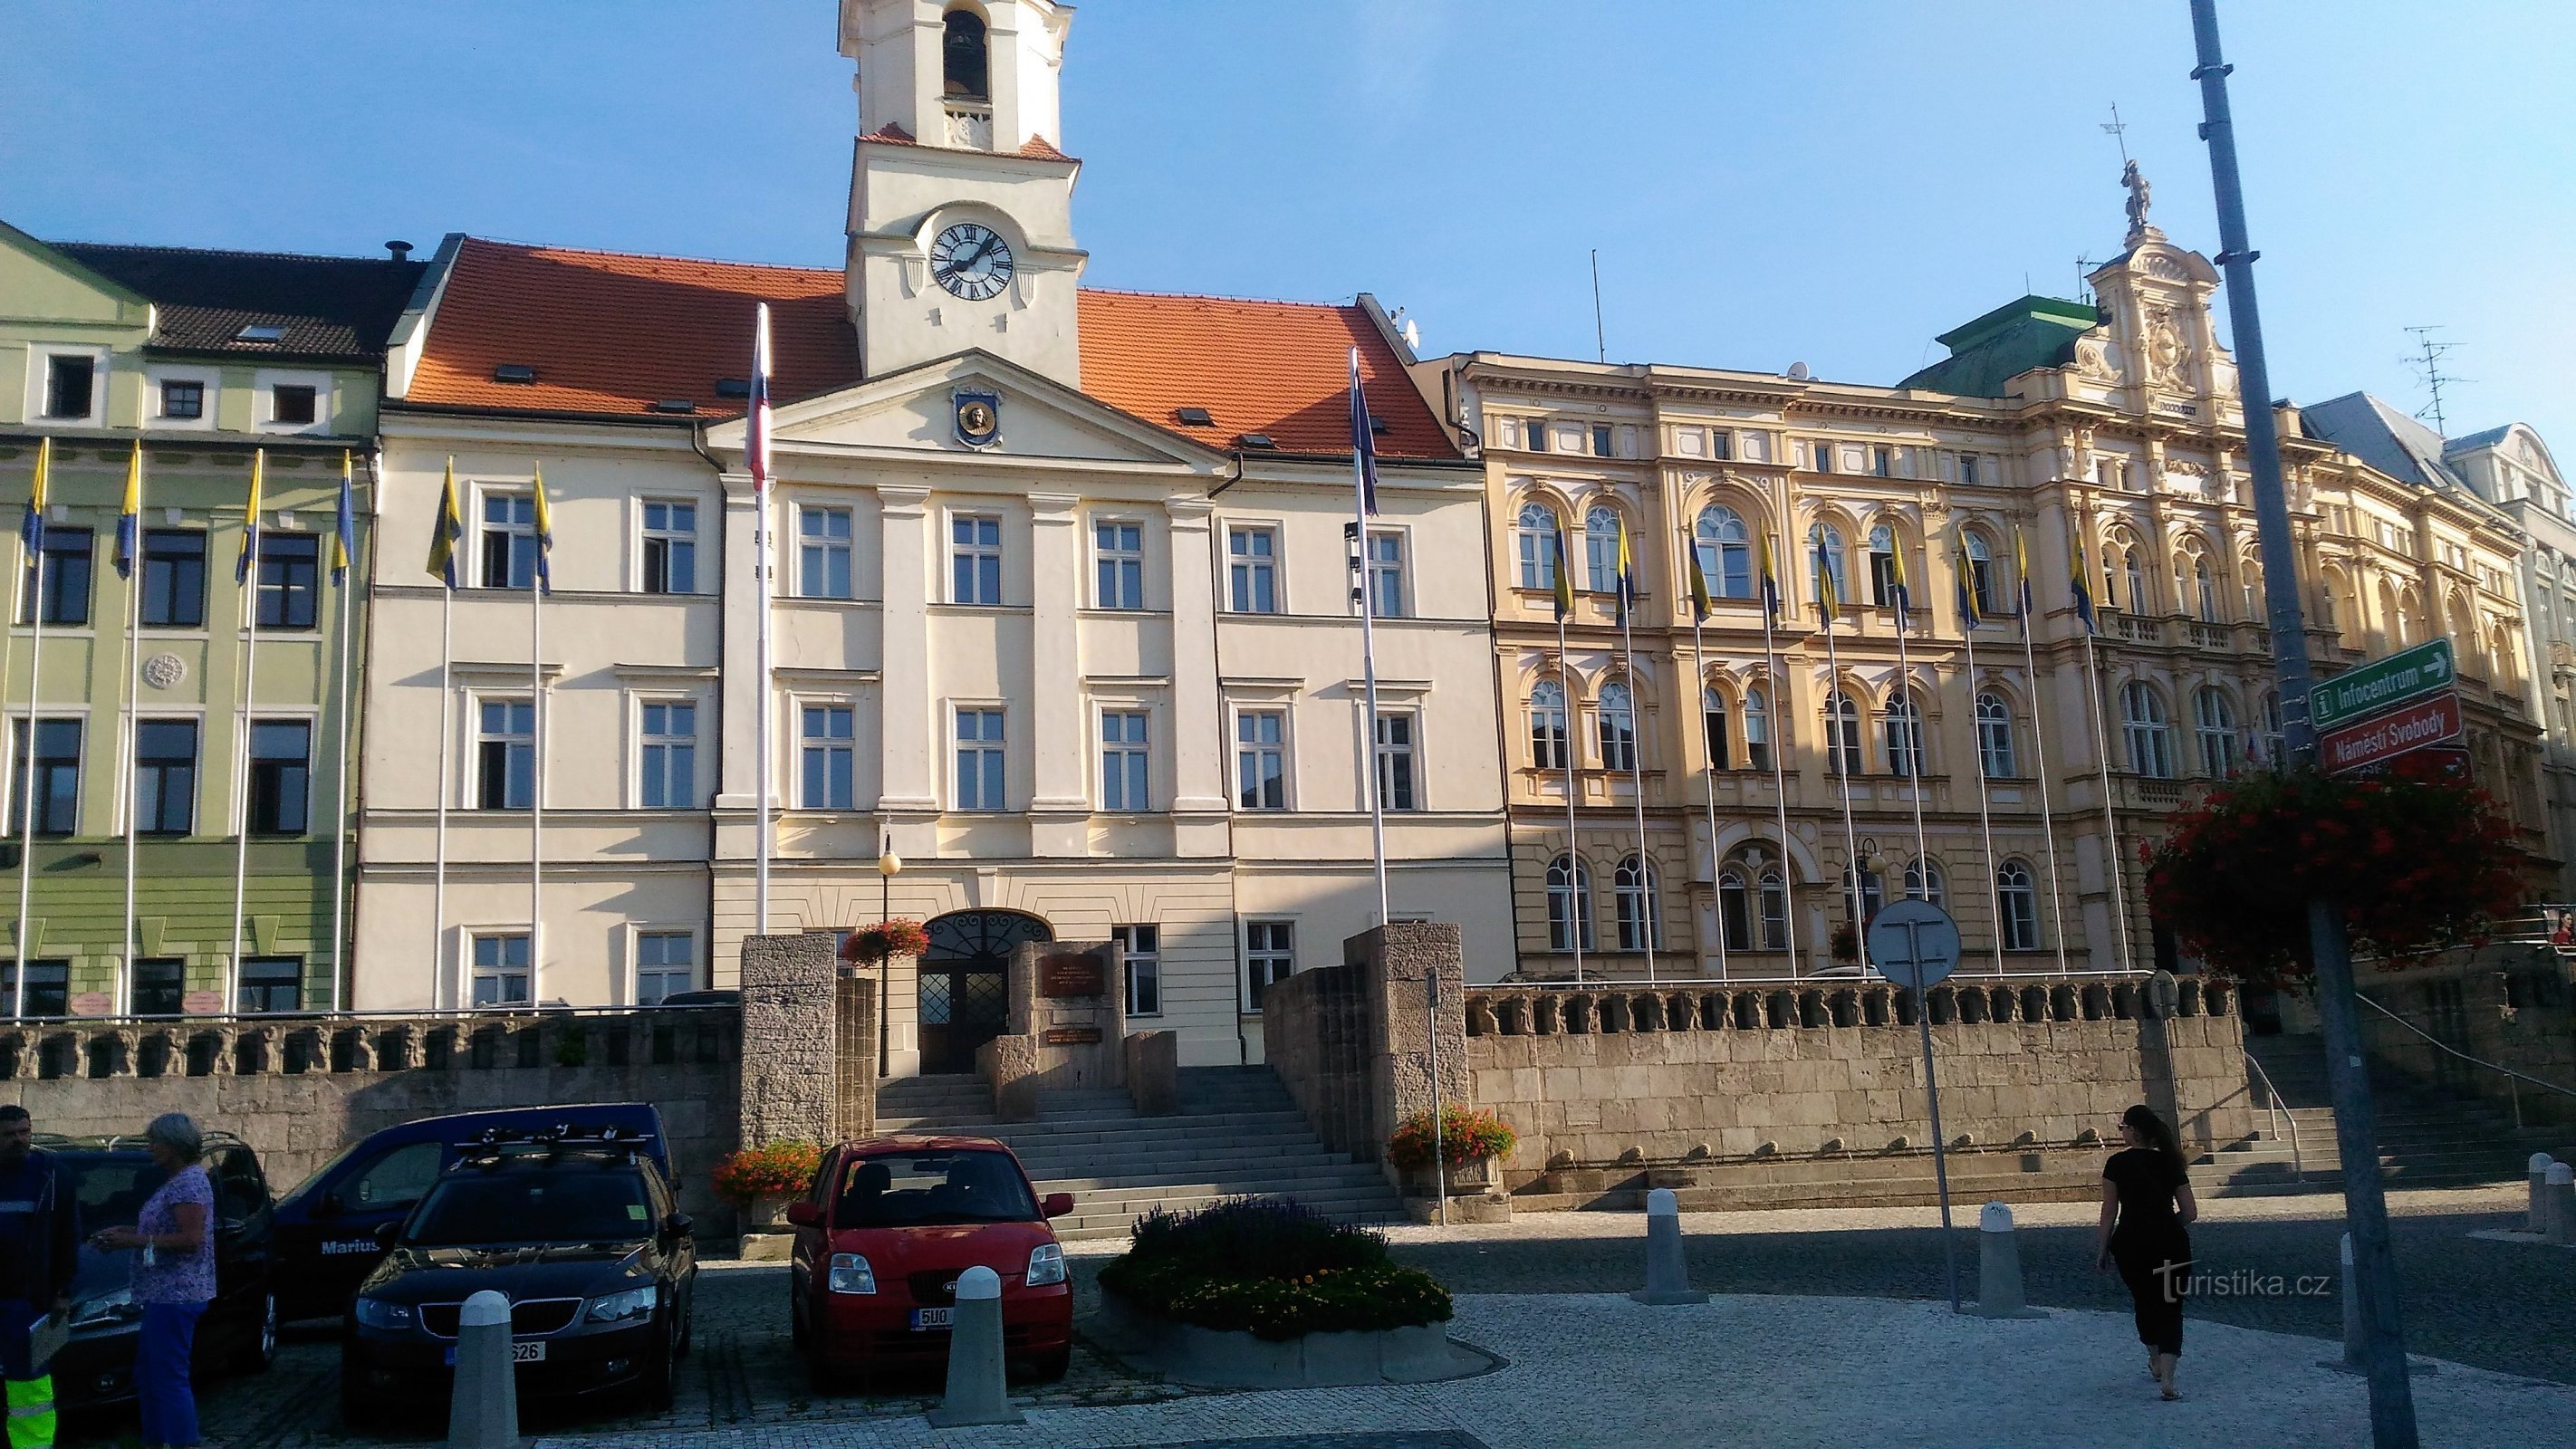 Monument sur l'escalier devant le bâtiment de la municipalité de Teplice